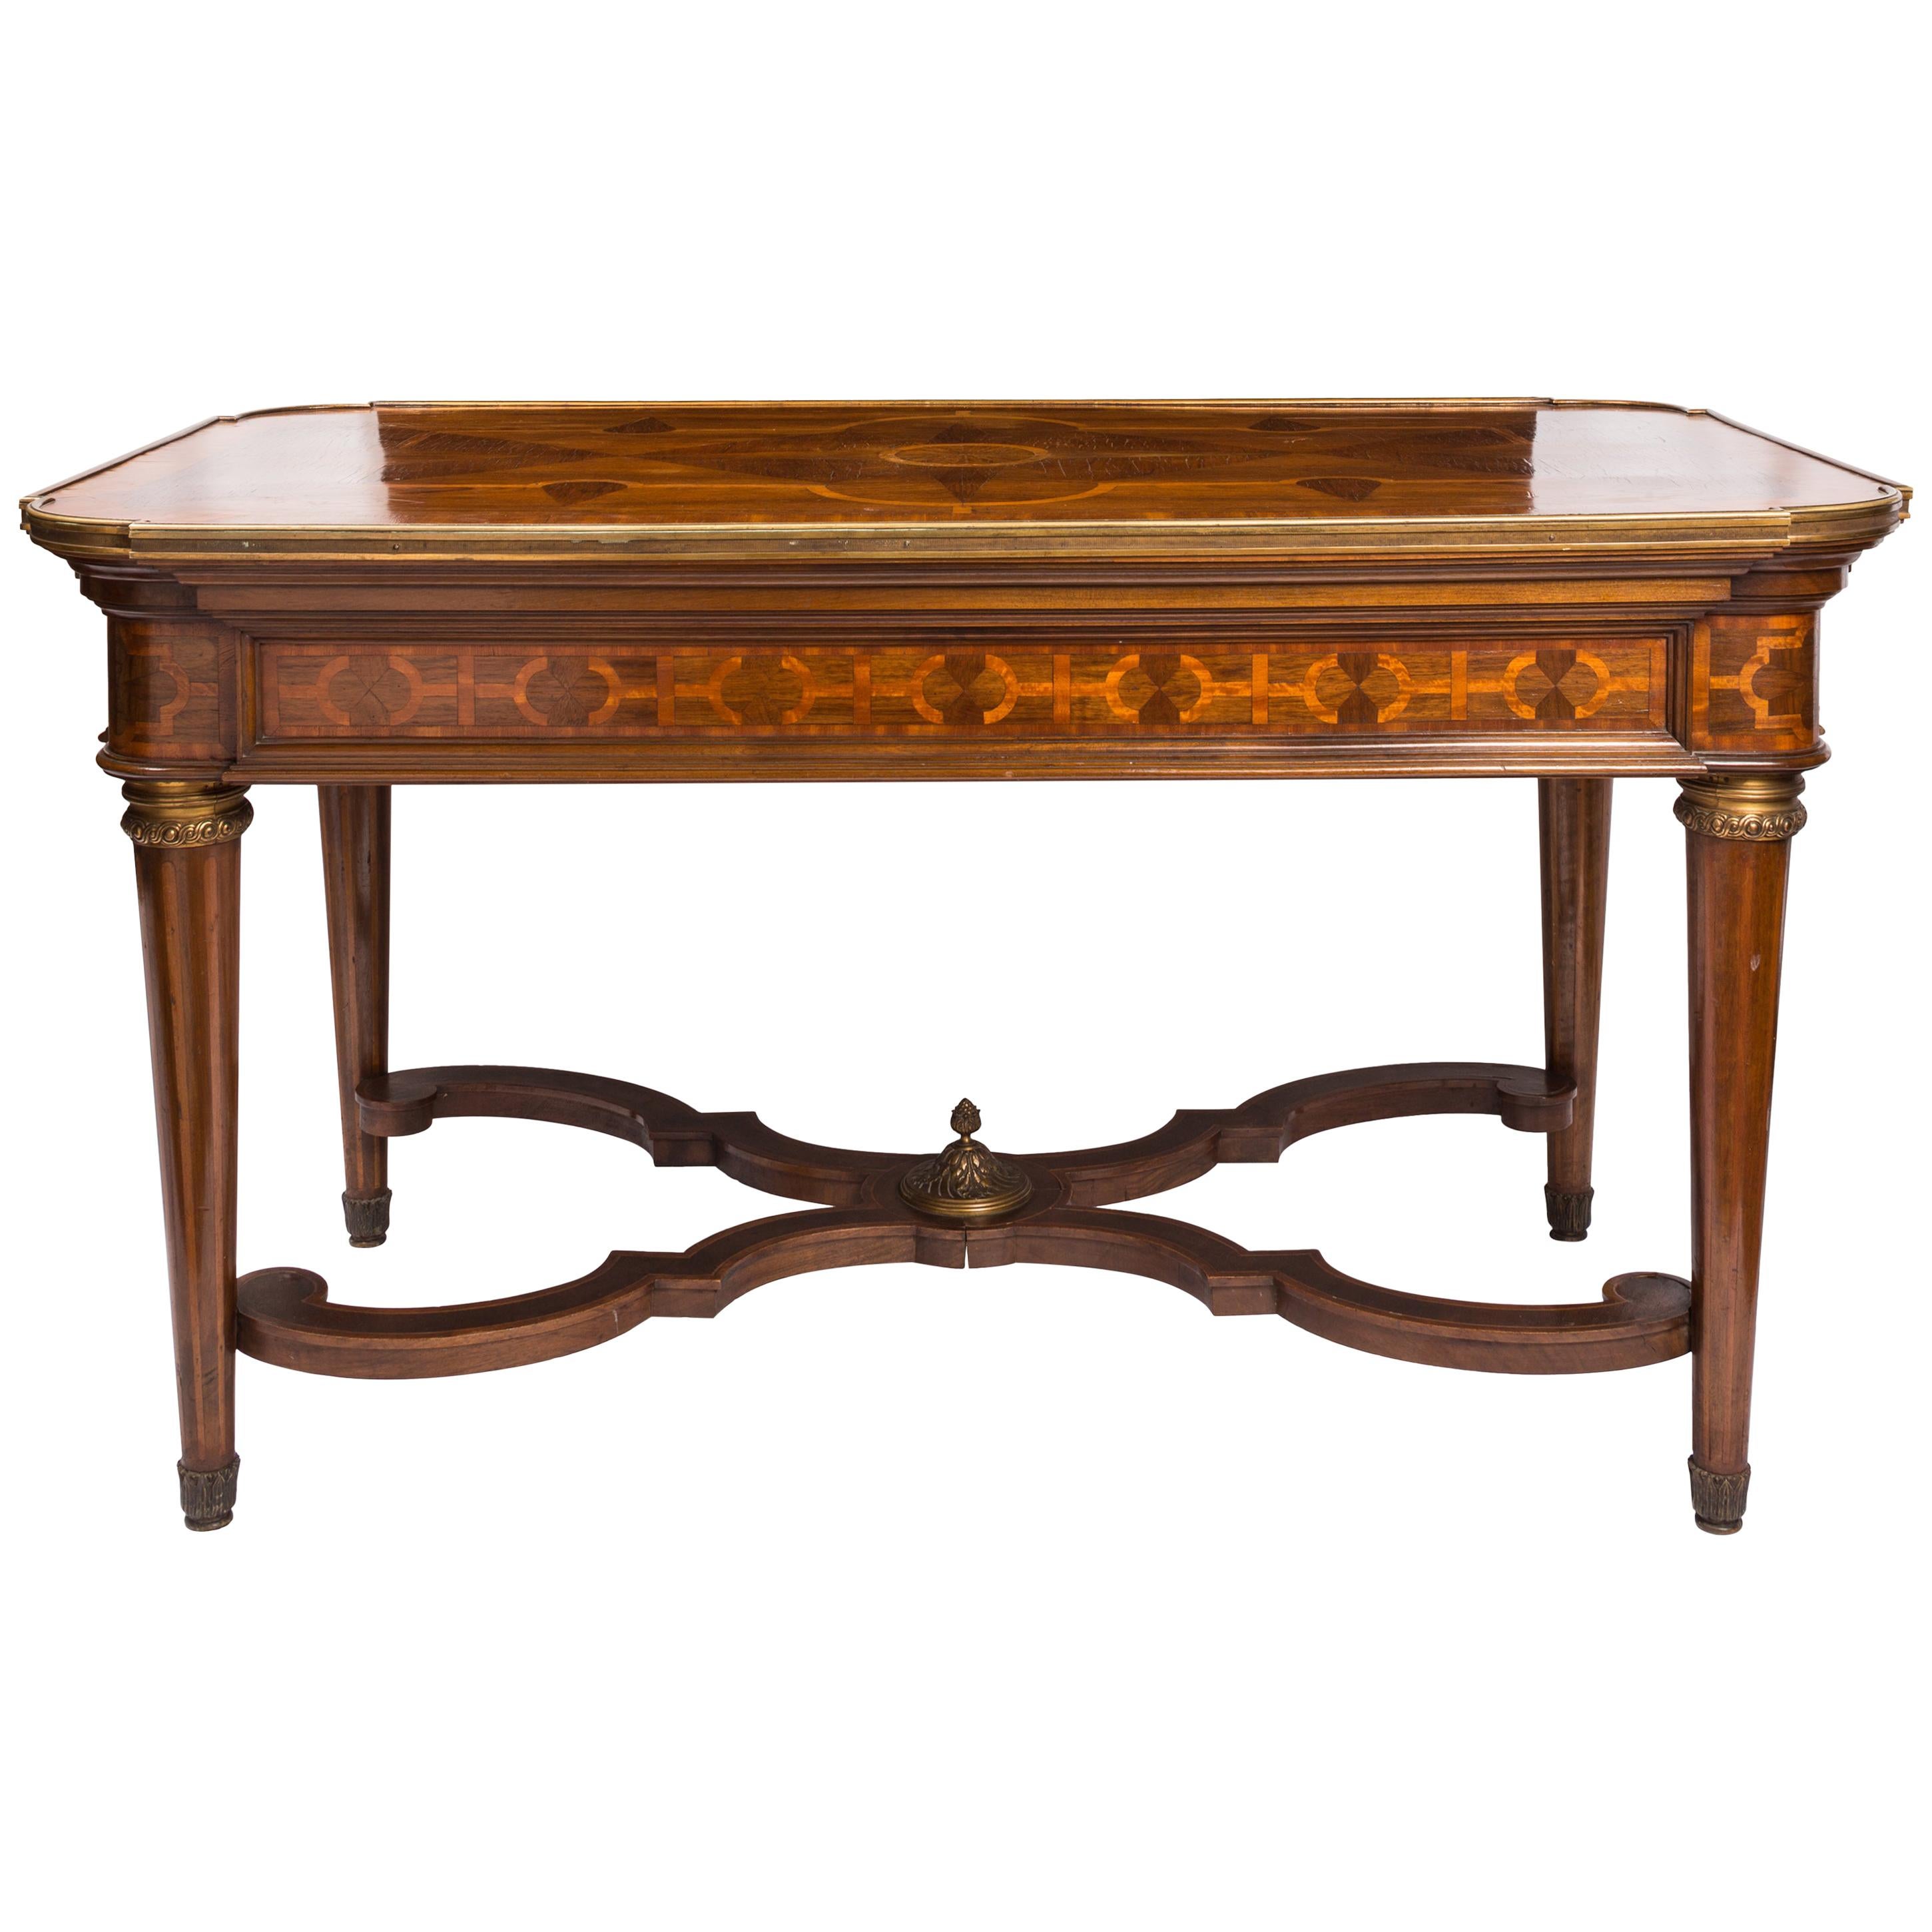 Table de style Louis XVI avec marqueterie géométrique en bois et détails en laiton